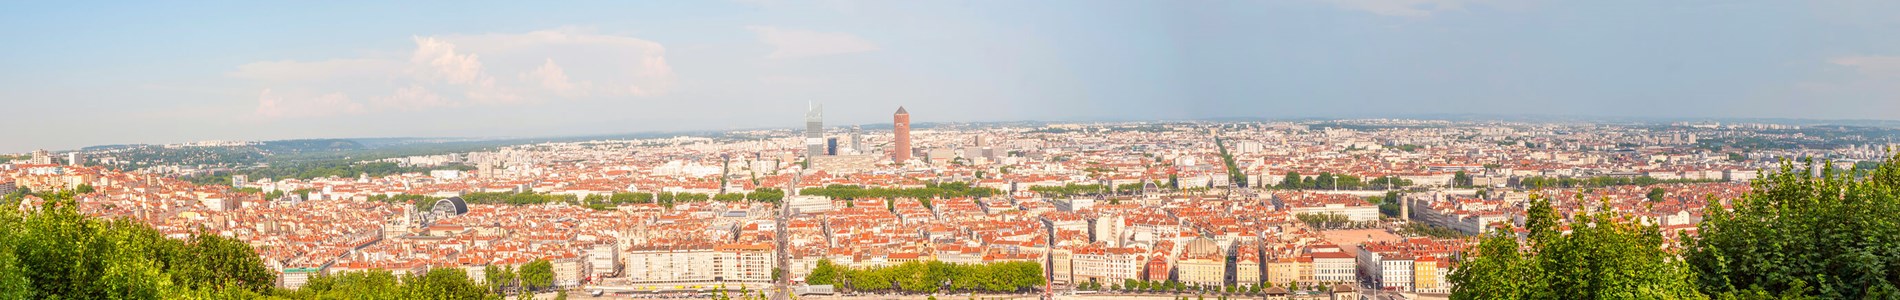 City scape of Lyon, France